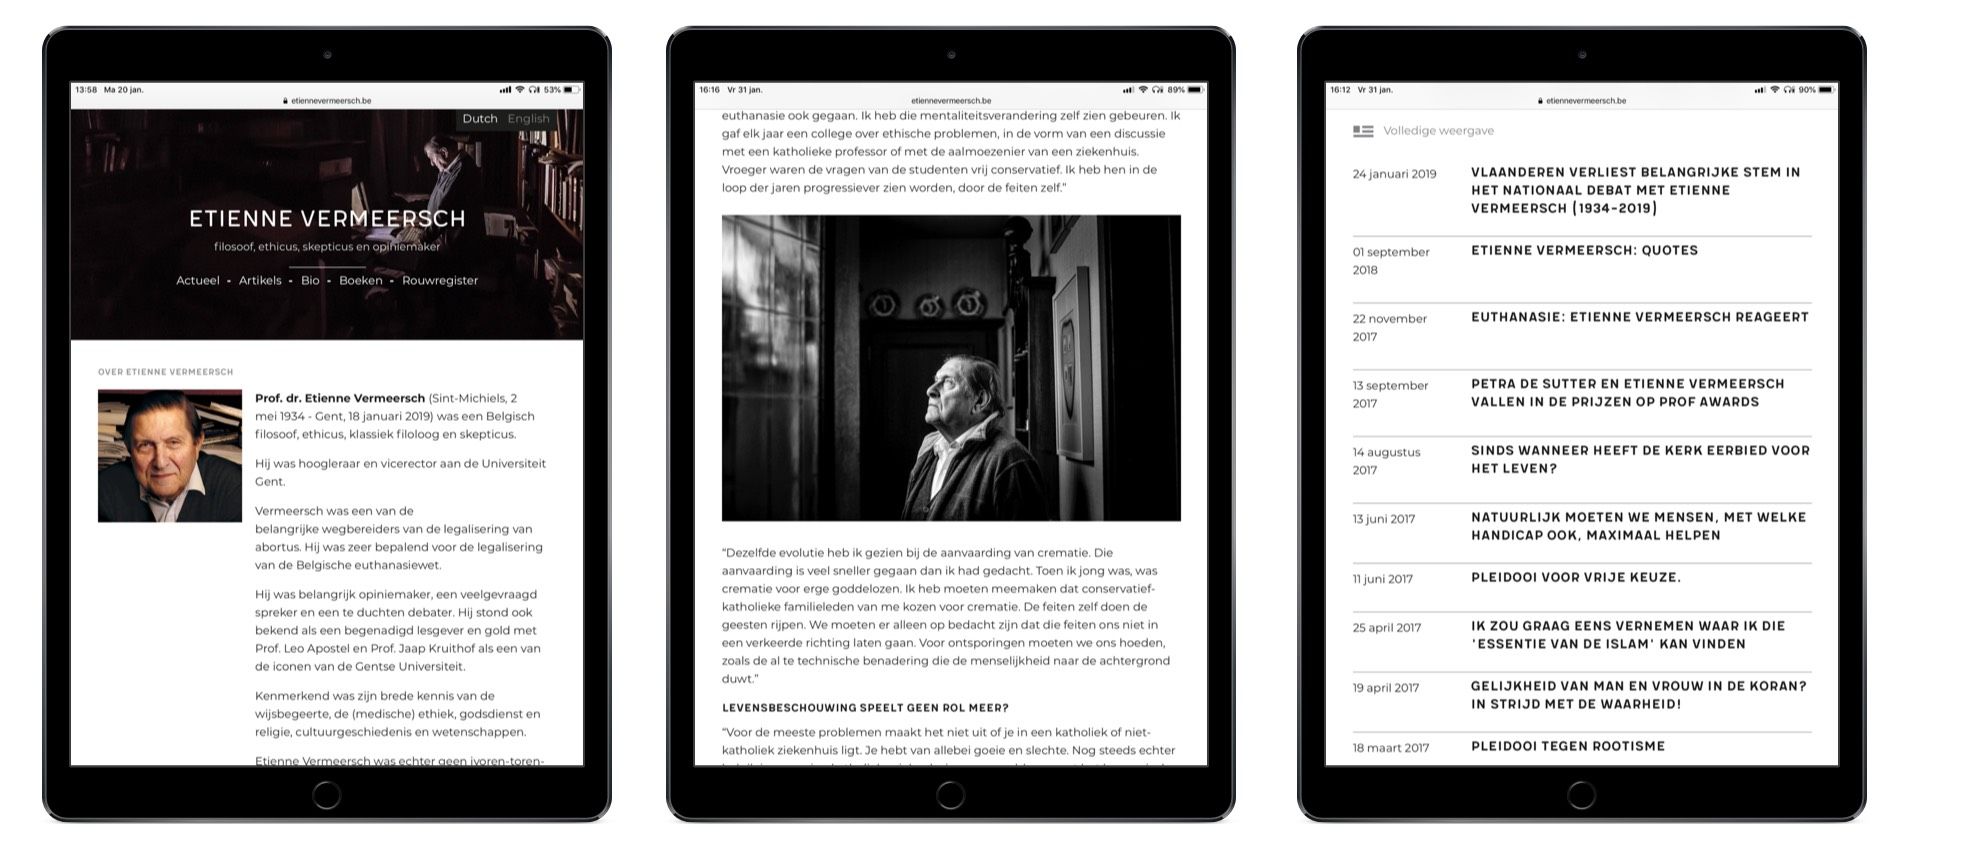 De site van Etienne Verrmeersch weergegeven op een iPad.